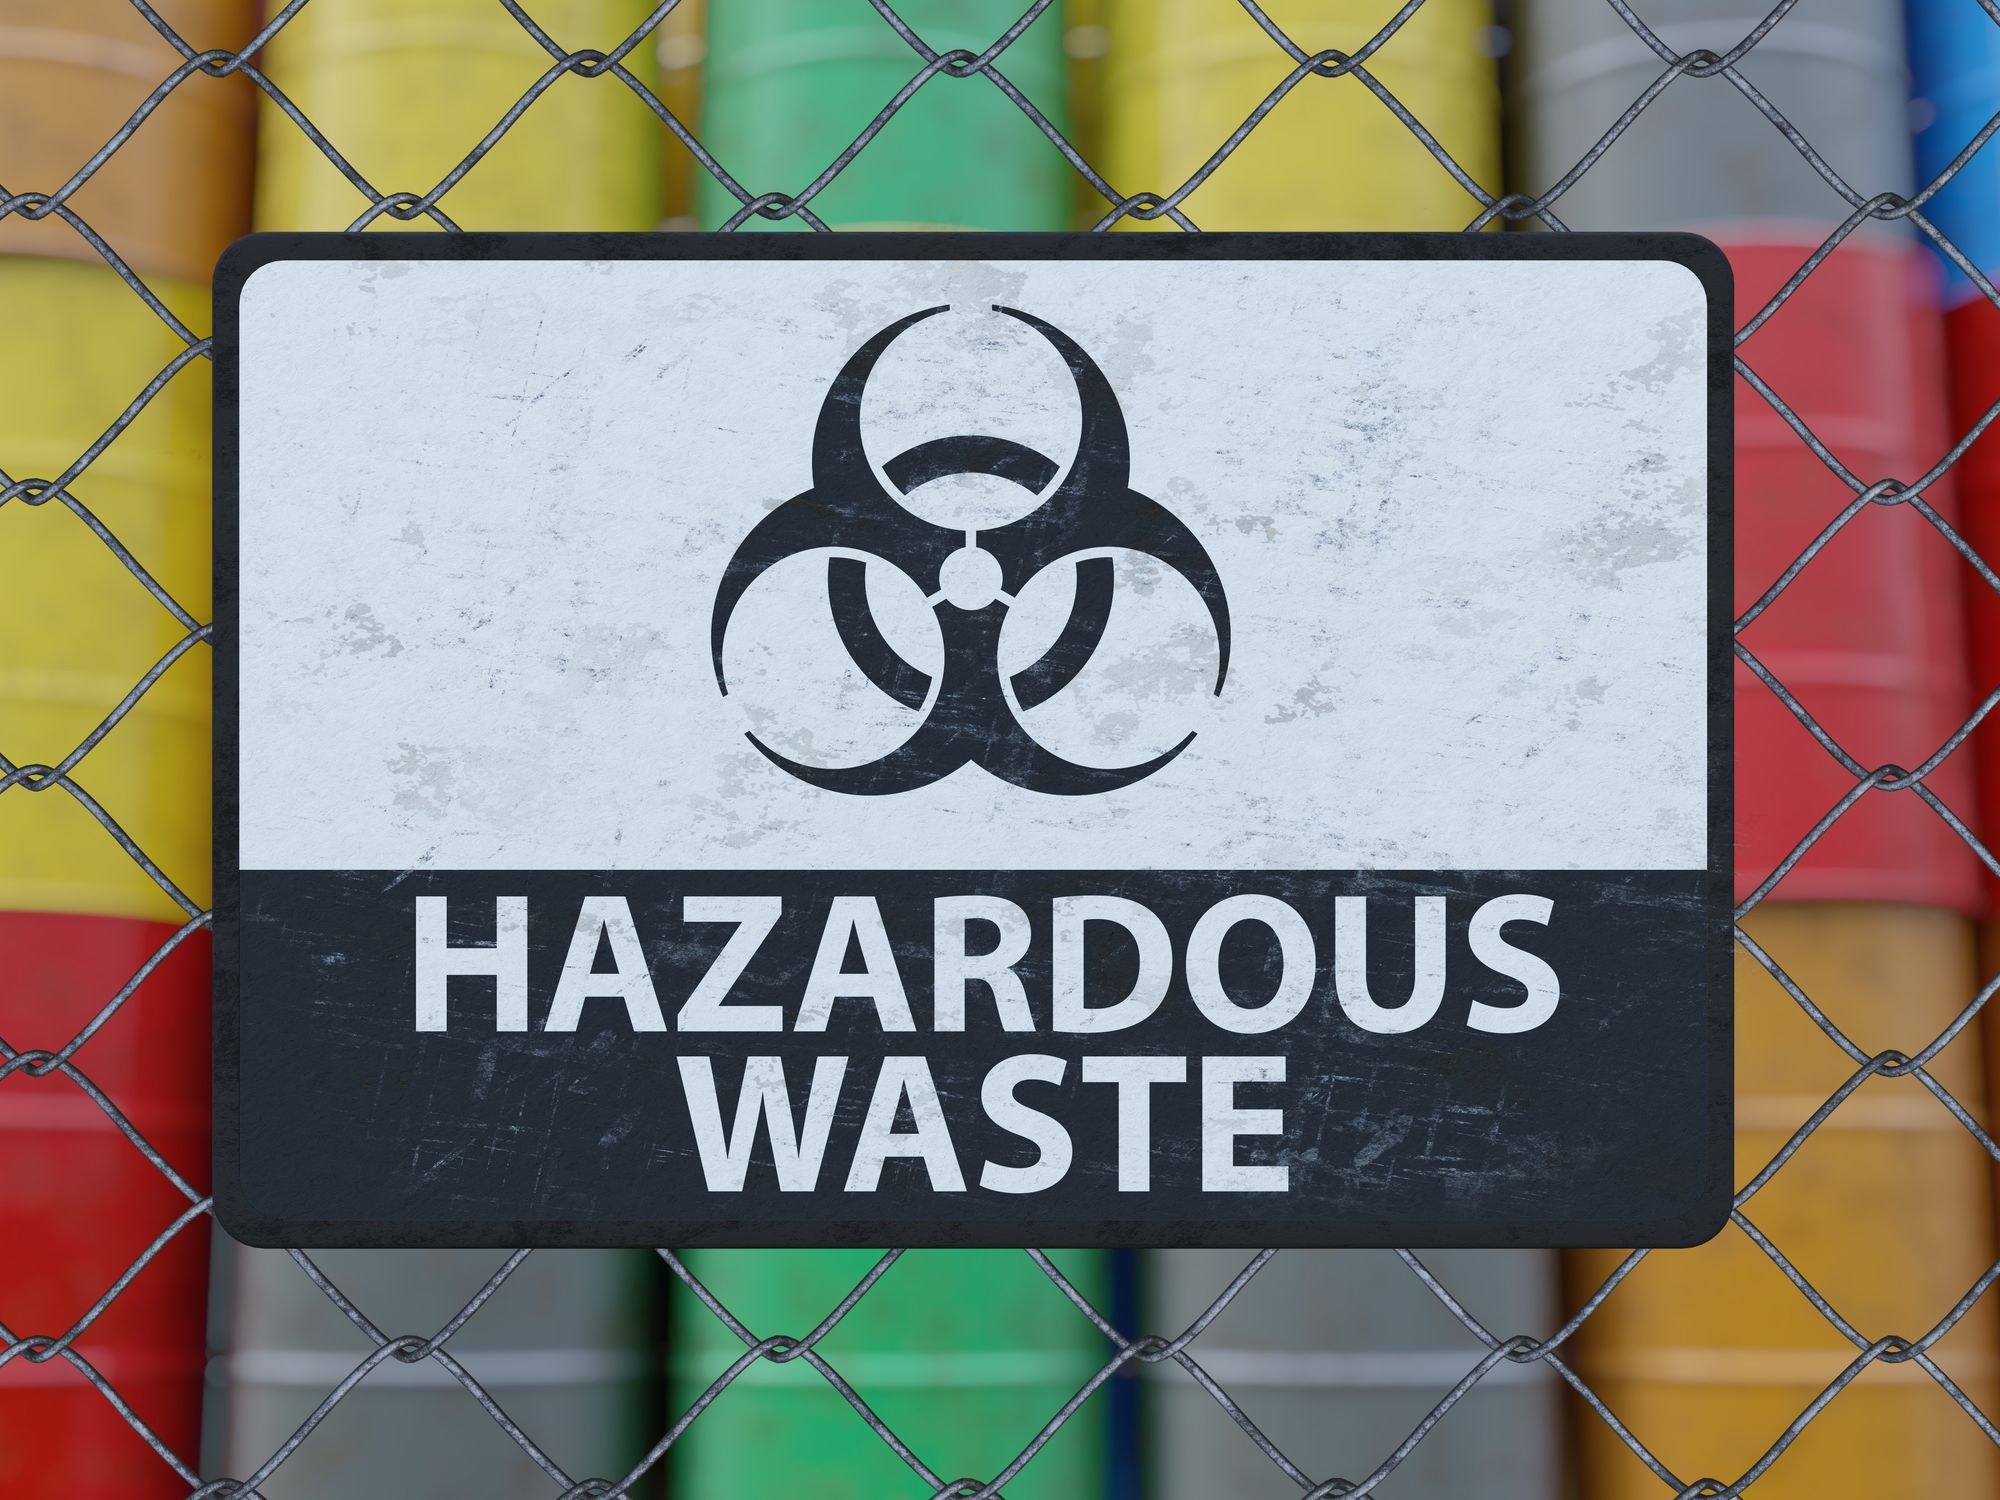 Hazardous wastes